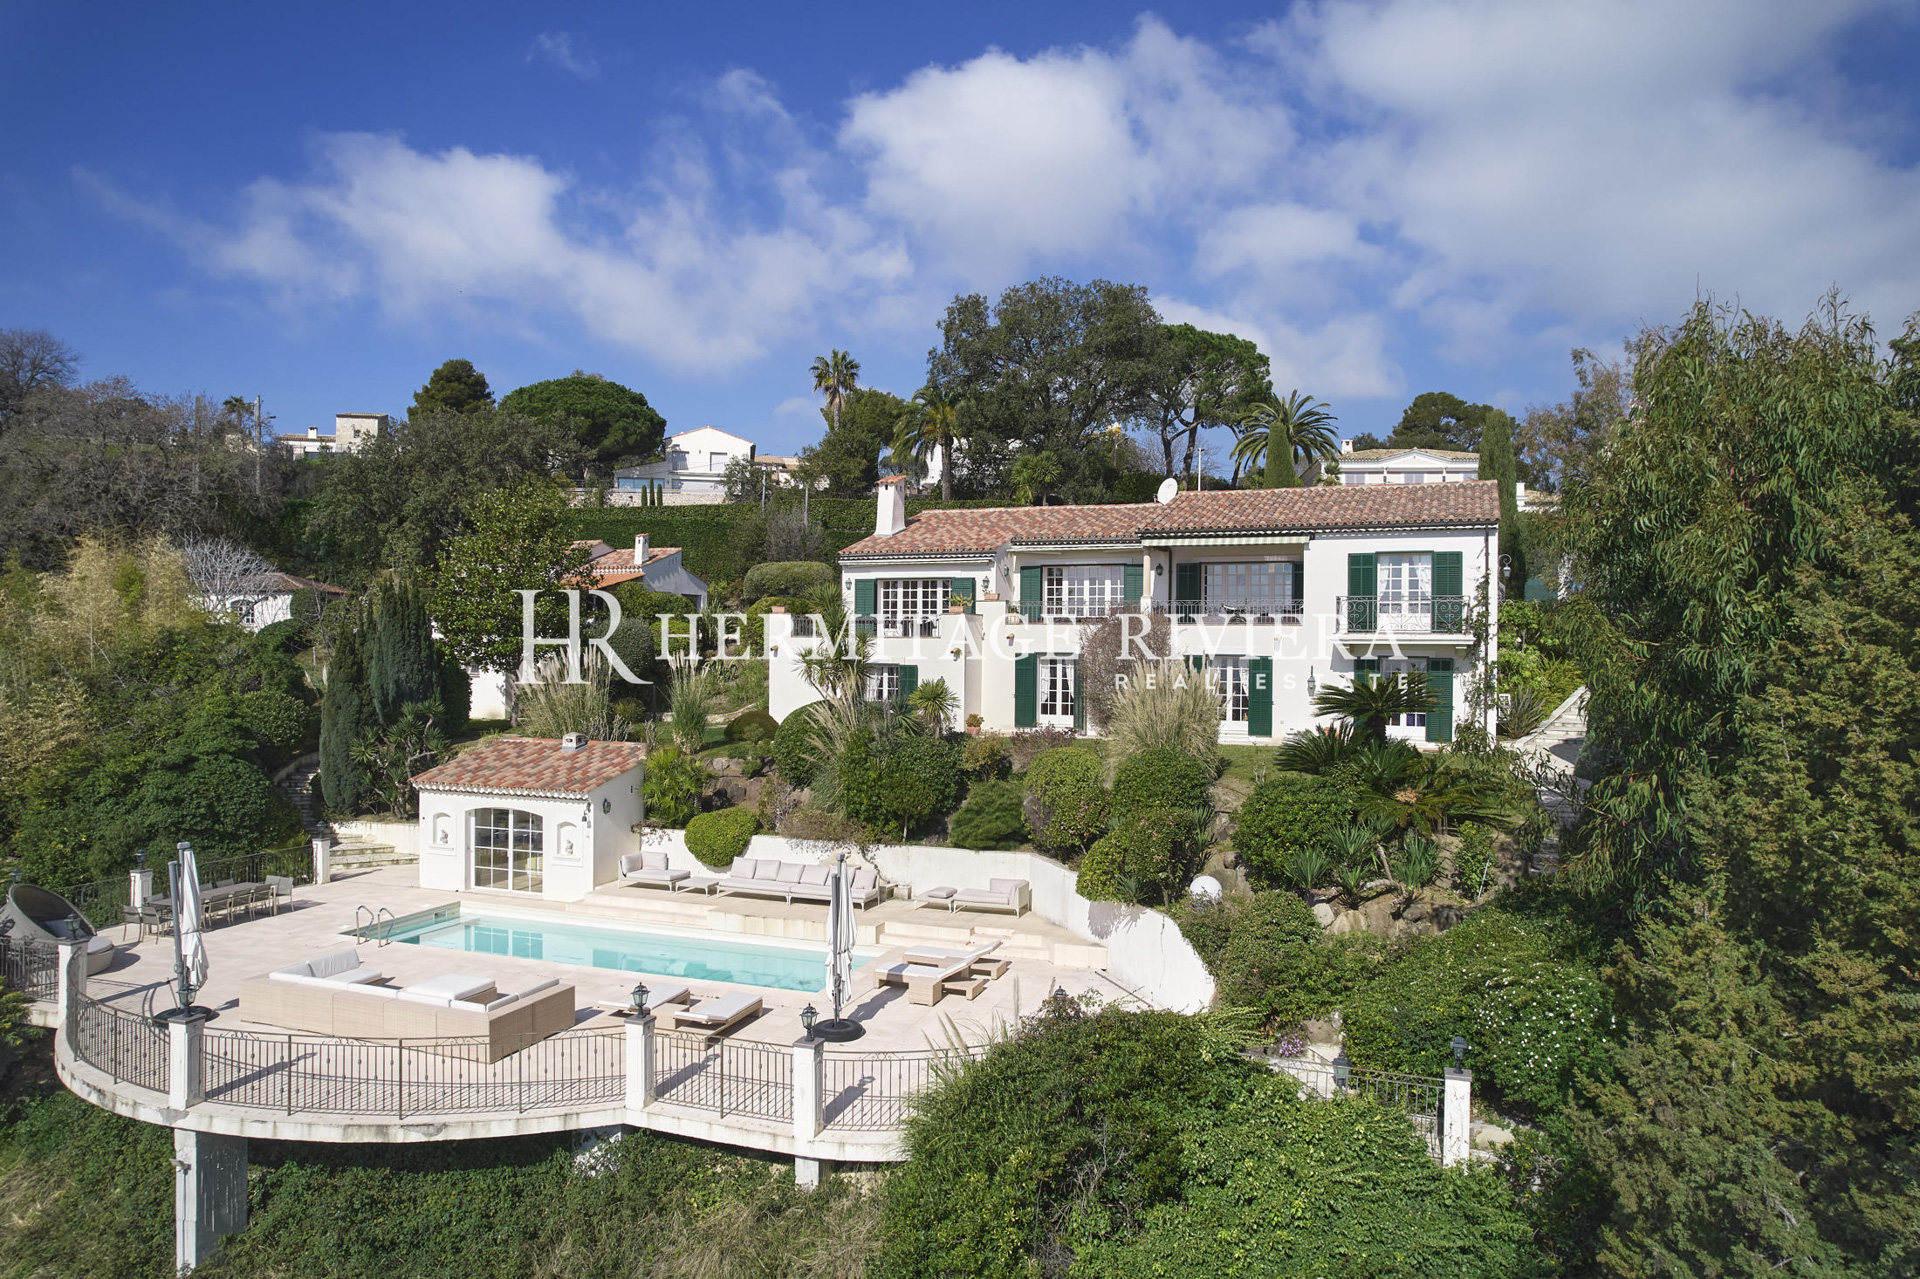 Splendid villa calm with sea view (image 25)